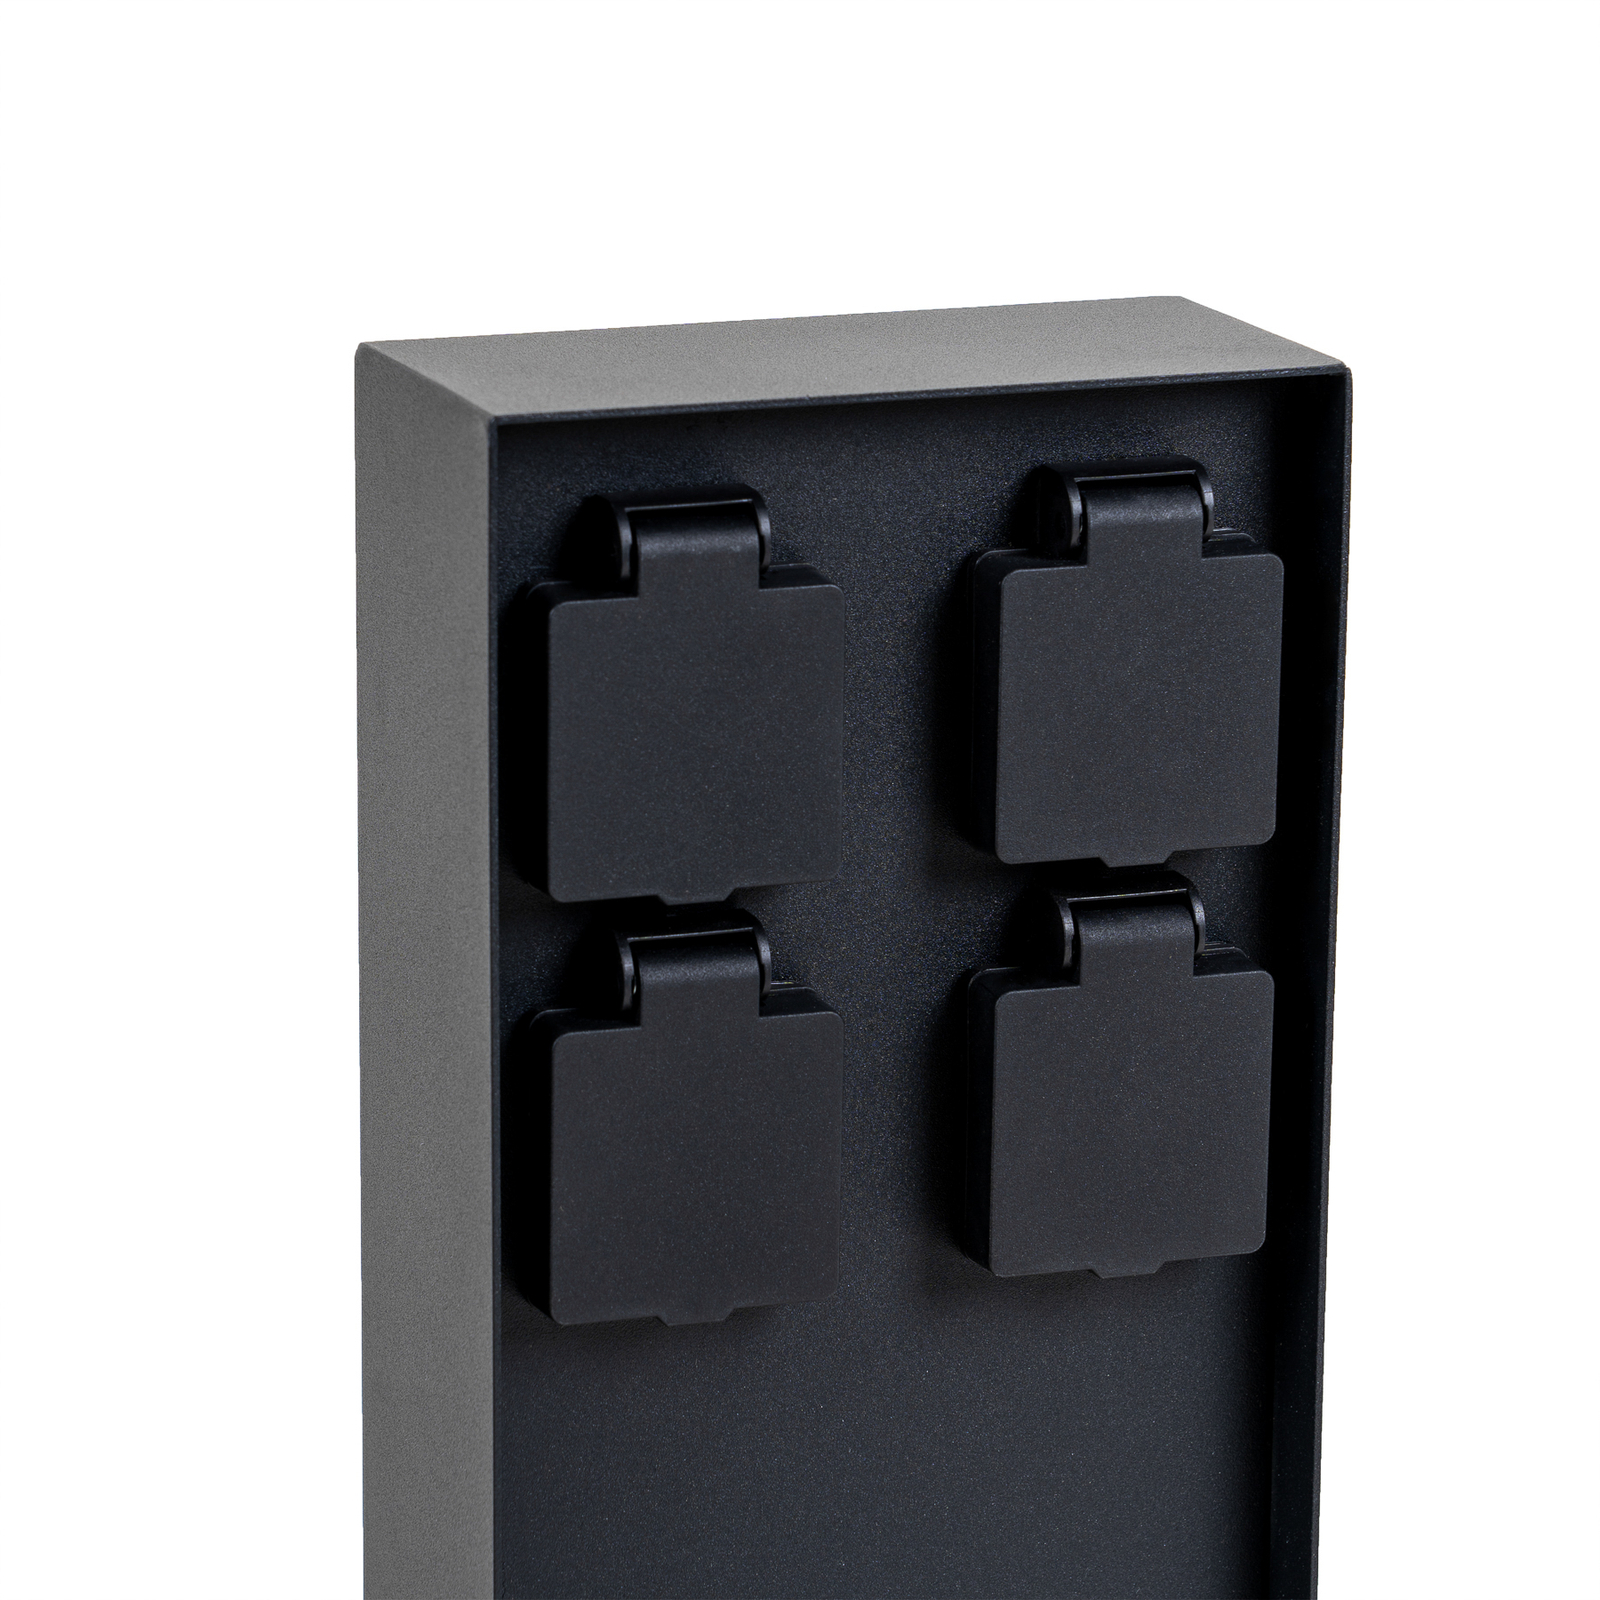 Coloană de energie Prios Foranda, 4 bucăți, negru, 40 cm